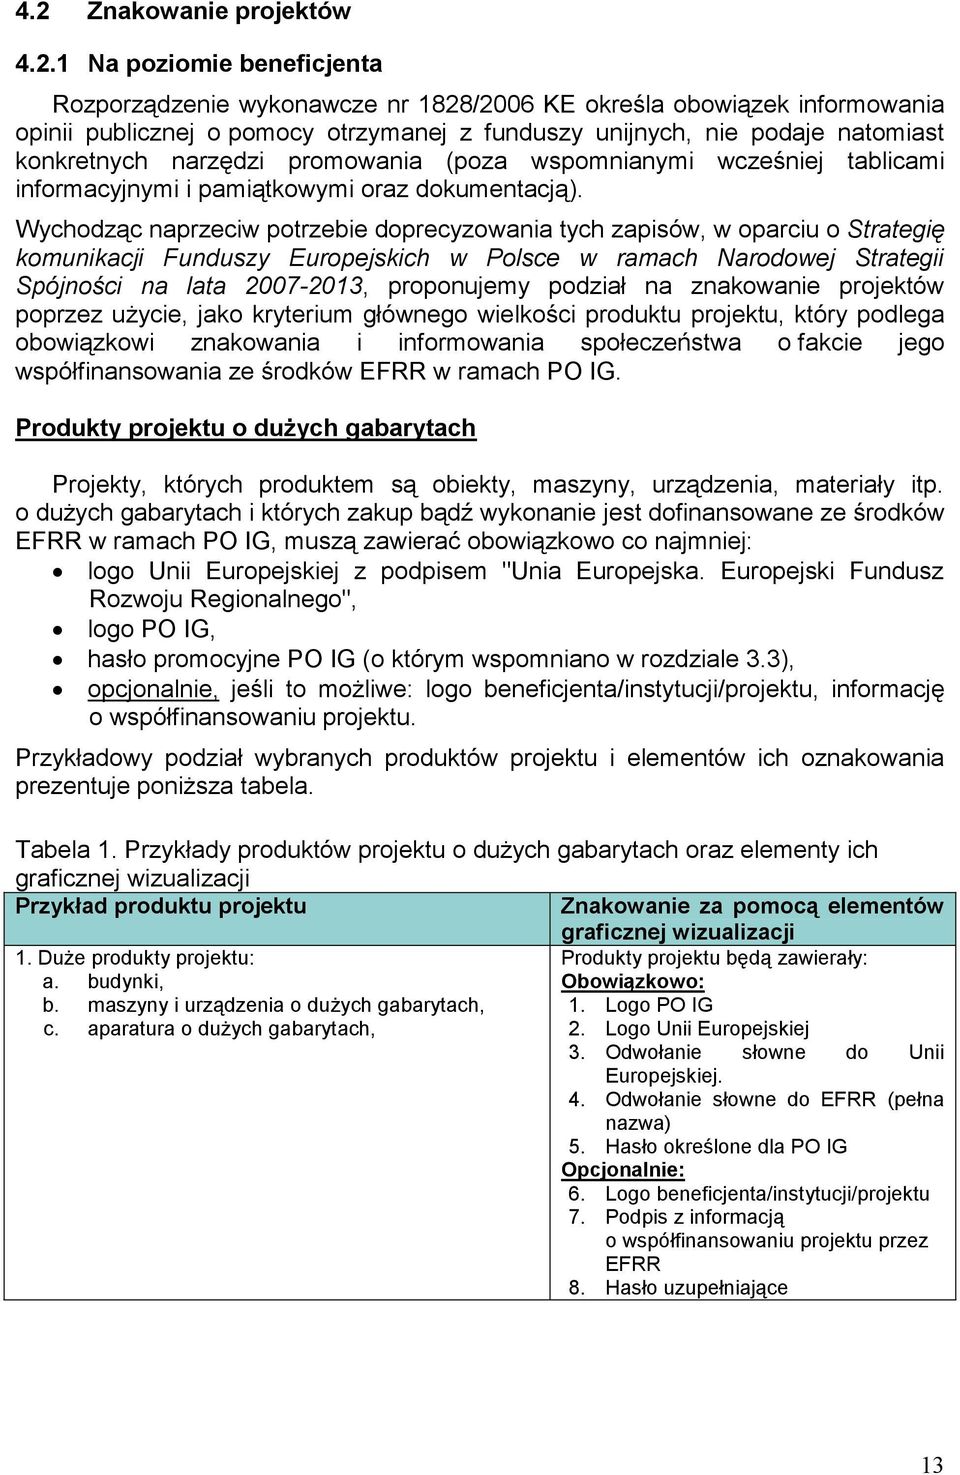 Wychodząc naprzeciw potrzebie doprecyzowania tych zapisów, w oparciu o Strategię komunikacji Funduszy Europejskich w Polsce w ramach Narodowej Strategii Spójności na lata 2007-2013, proponujemy